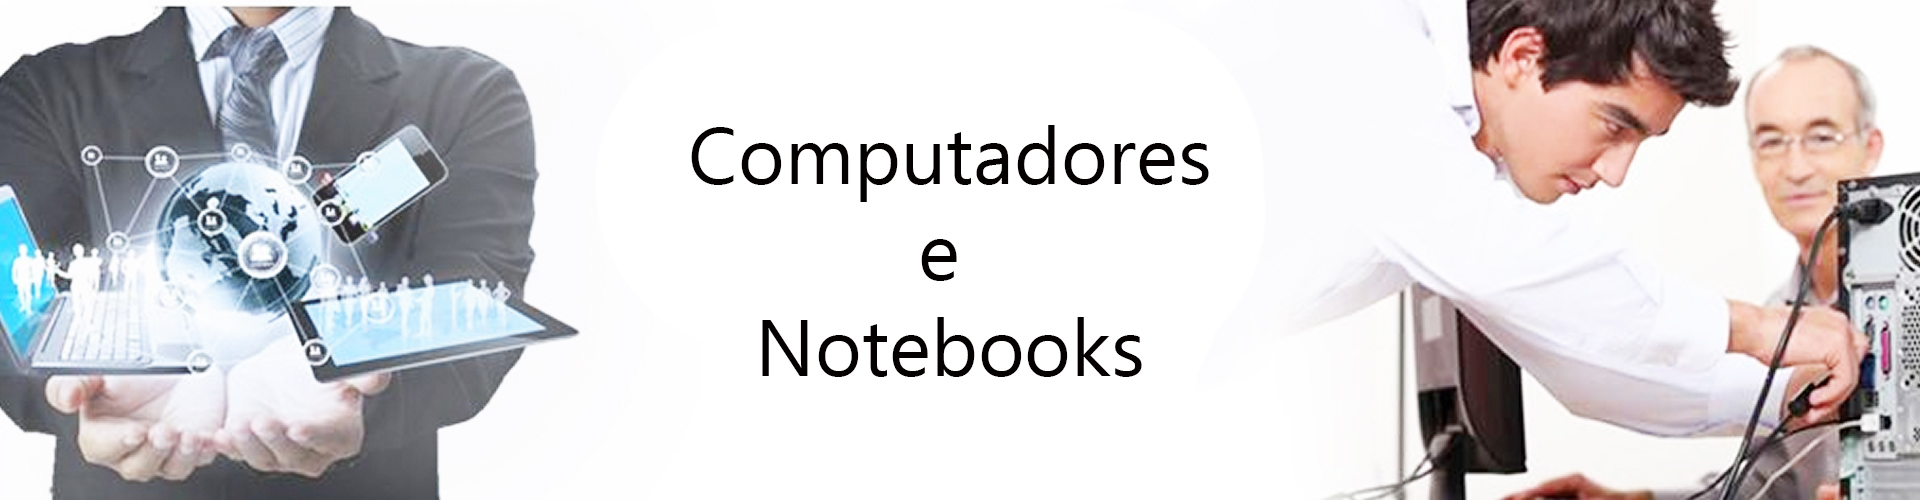 Notebooks e Computadores